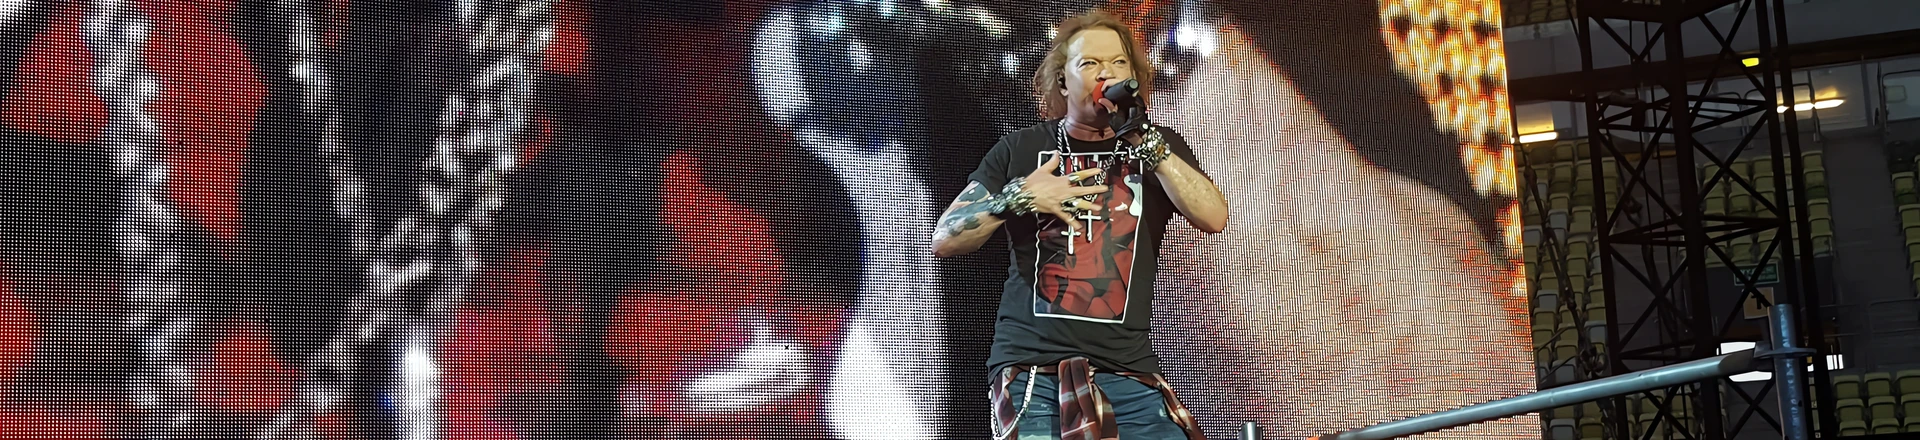 RELACJA: Guns N' Roses na Stadionie Energa Gdańsk